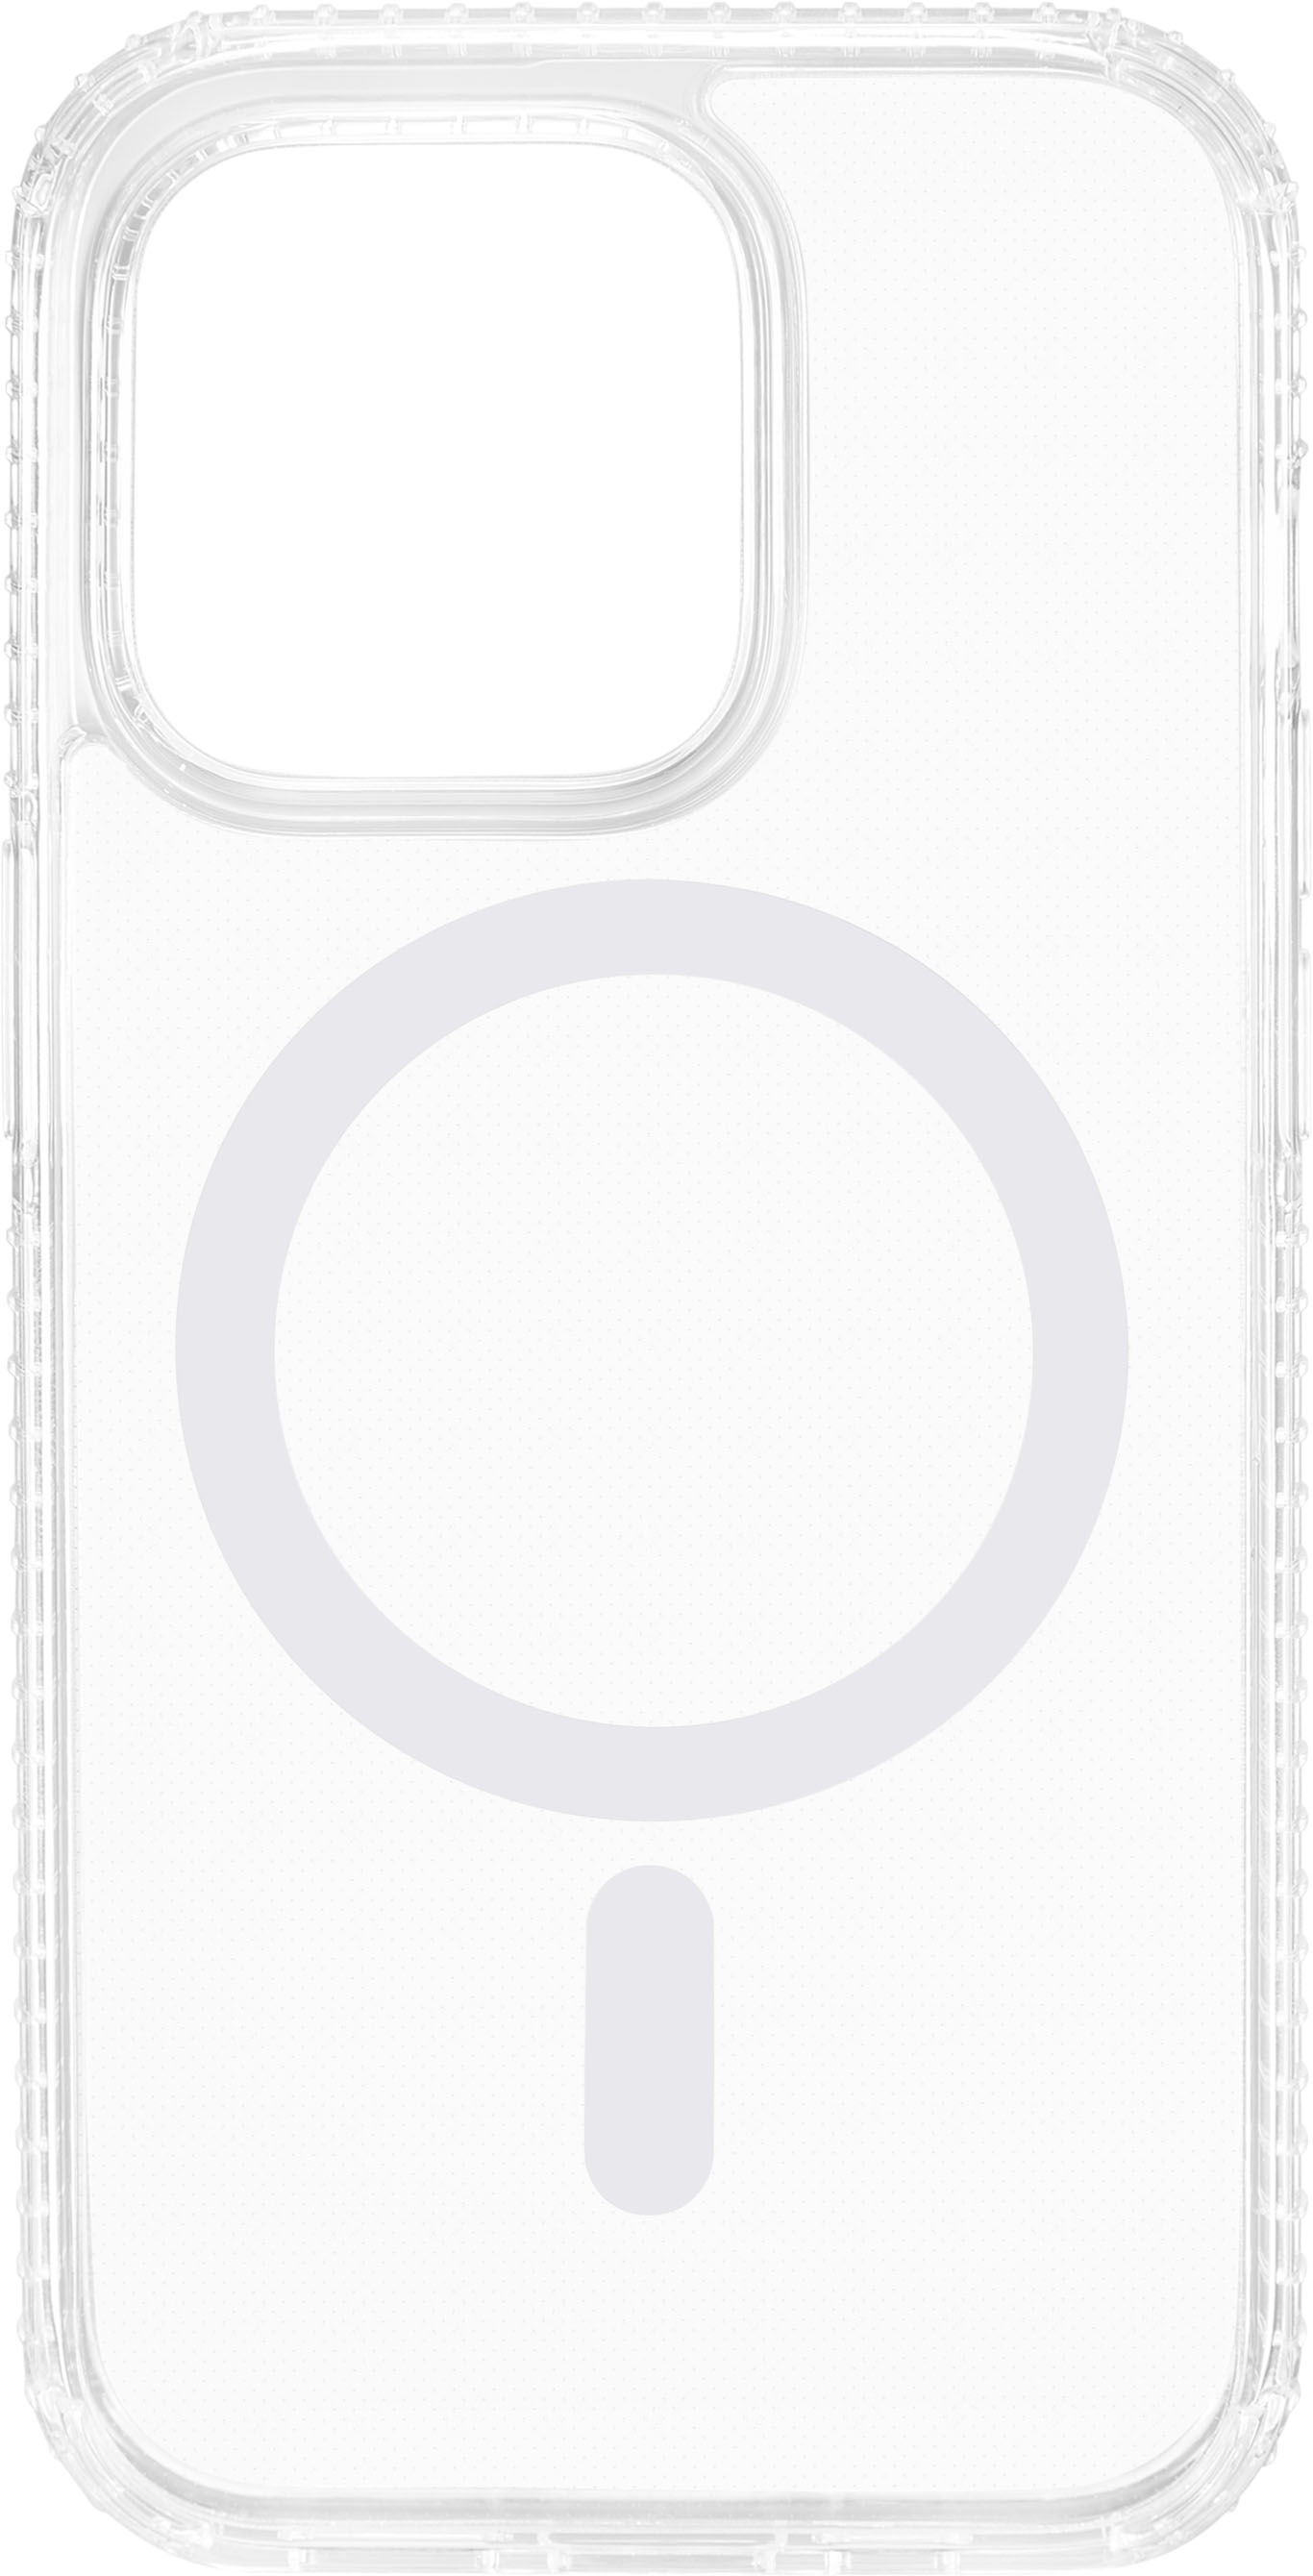 Funda Original Apple Transparente Magsafe iPhone 14 Pro Clear Case